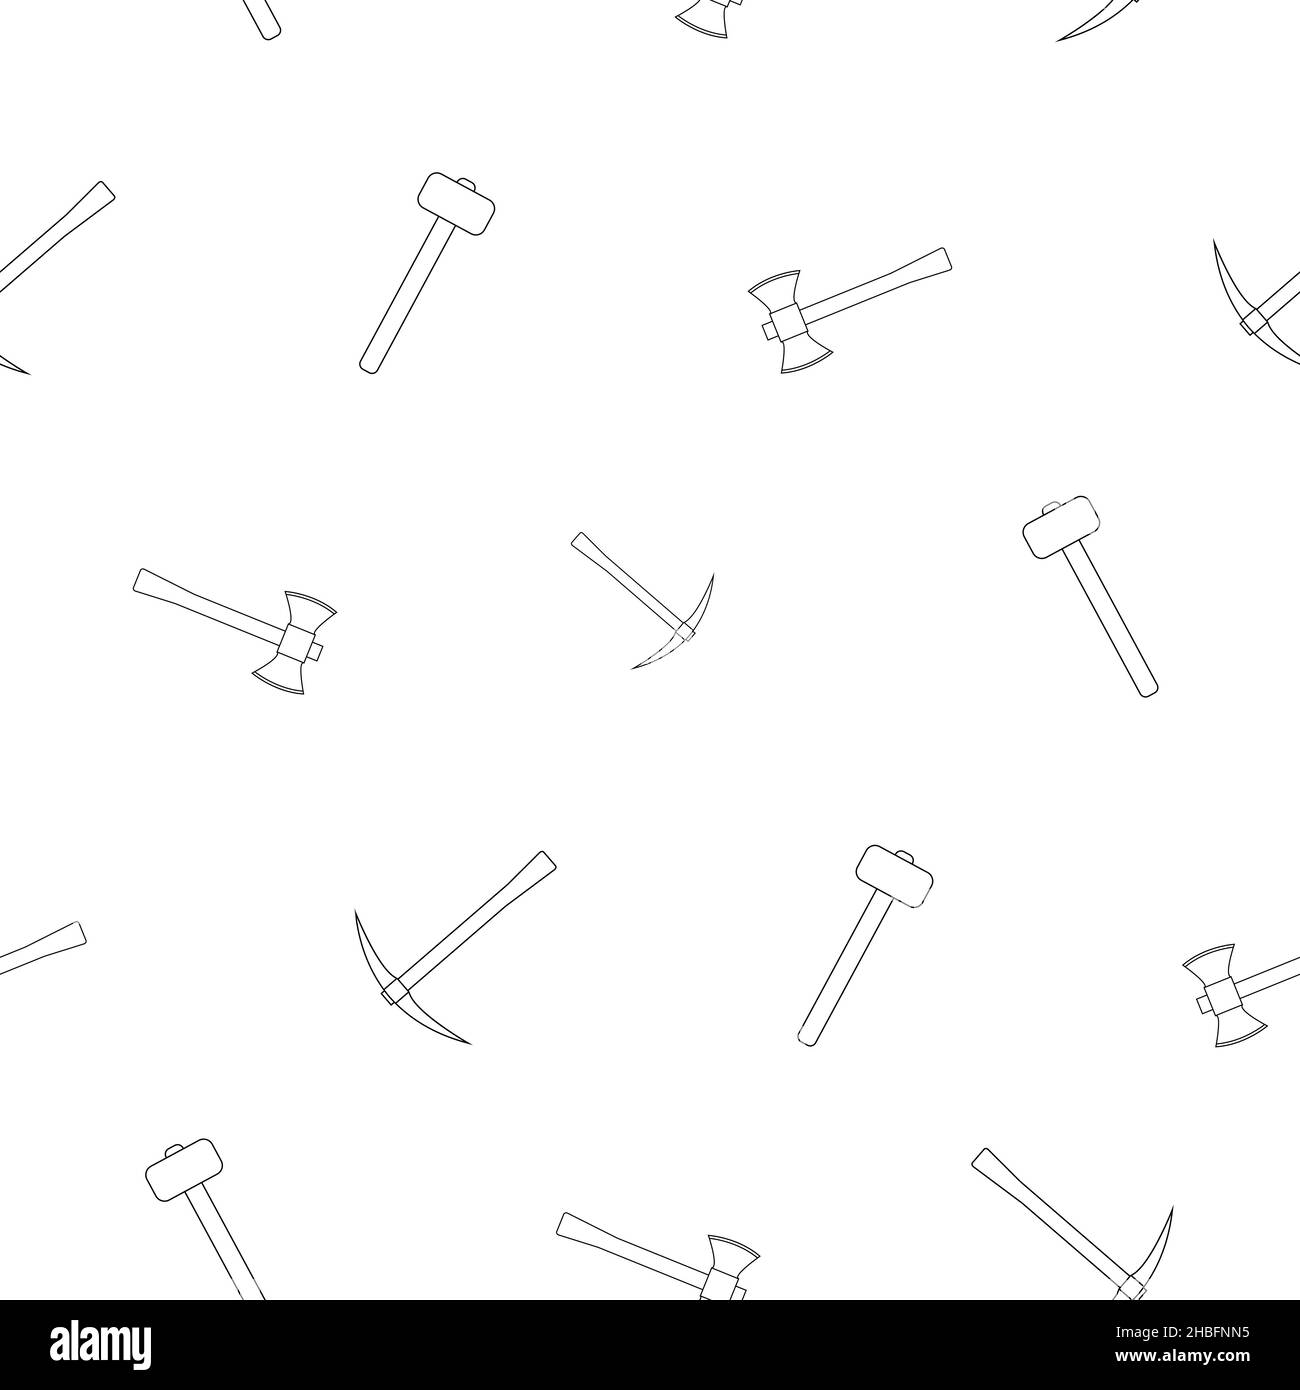 Motif de marteau, hache avec manche en bois en ligne.Sur fond blanc.Outils pour menuisiers et menuisiers.Illustration vectorielle plate. Illustration de Vecteur